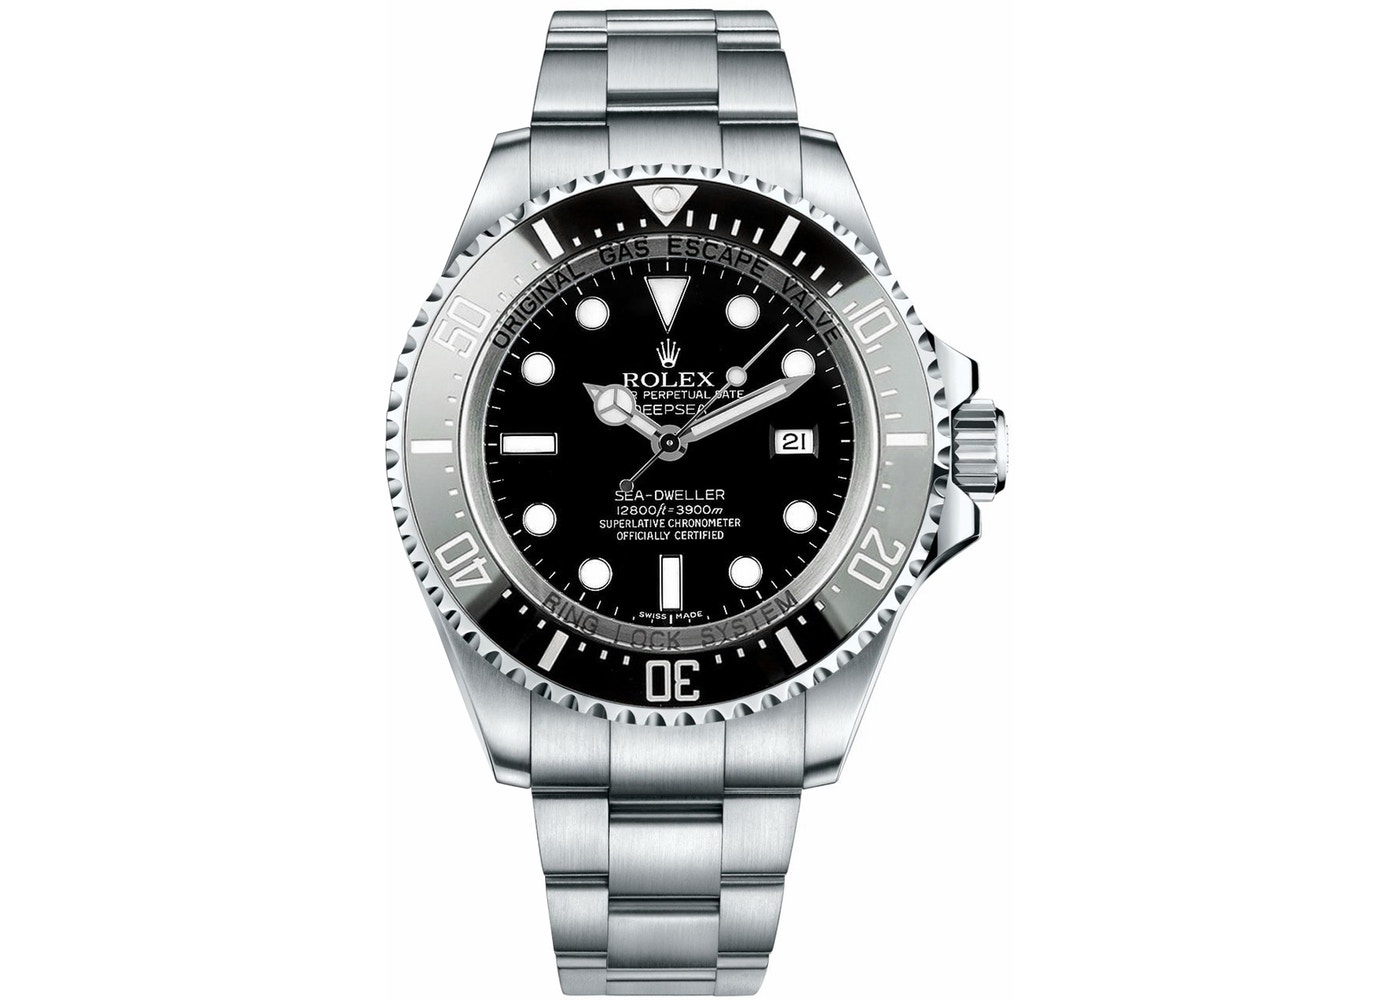 Rolex Sea-Dweller Deep-Sea - Edinburgh Watch Company